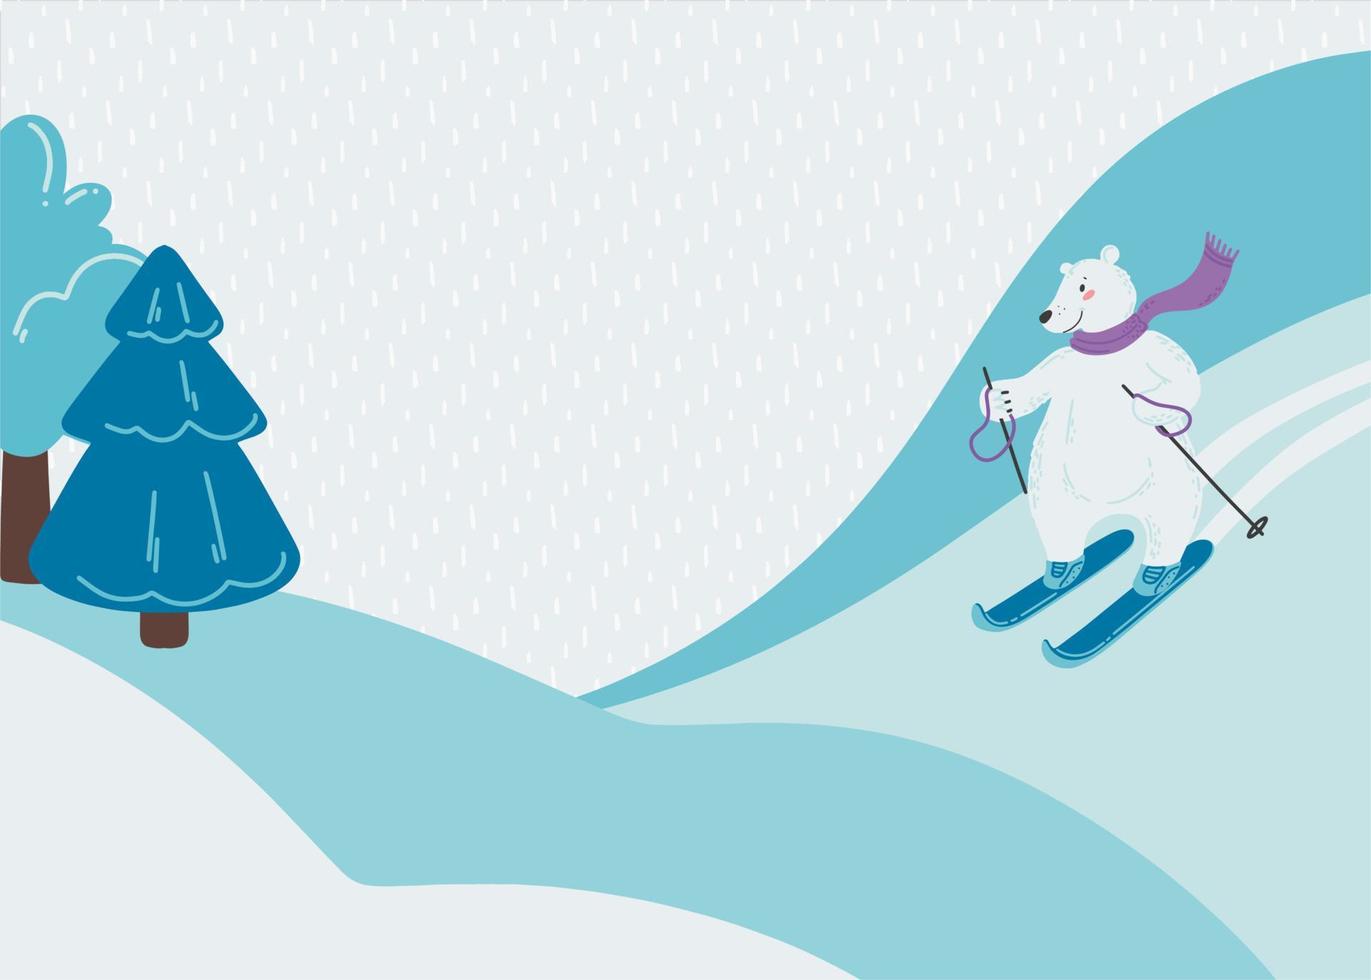 ilustração com um urso polar fofo que está esquiando. paisagem de inverno nevado. fundo sazonal com lugar para texto. ilustração vetorial em um estilo simples. vetor